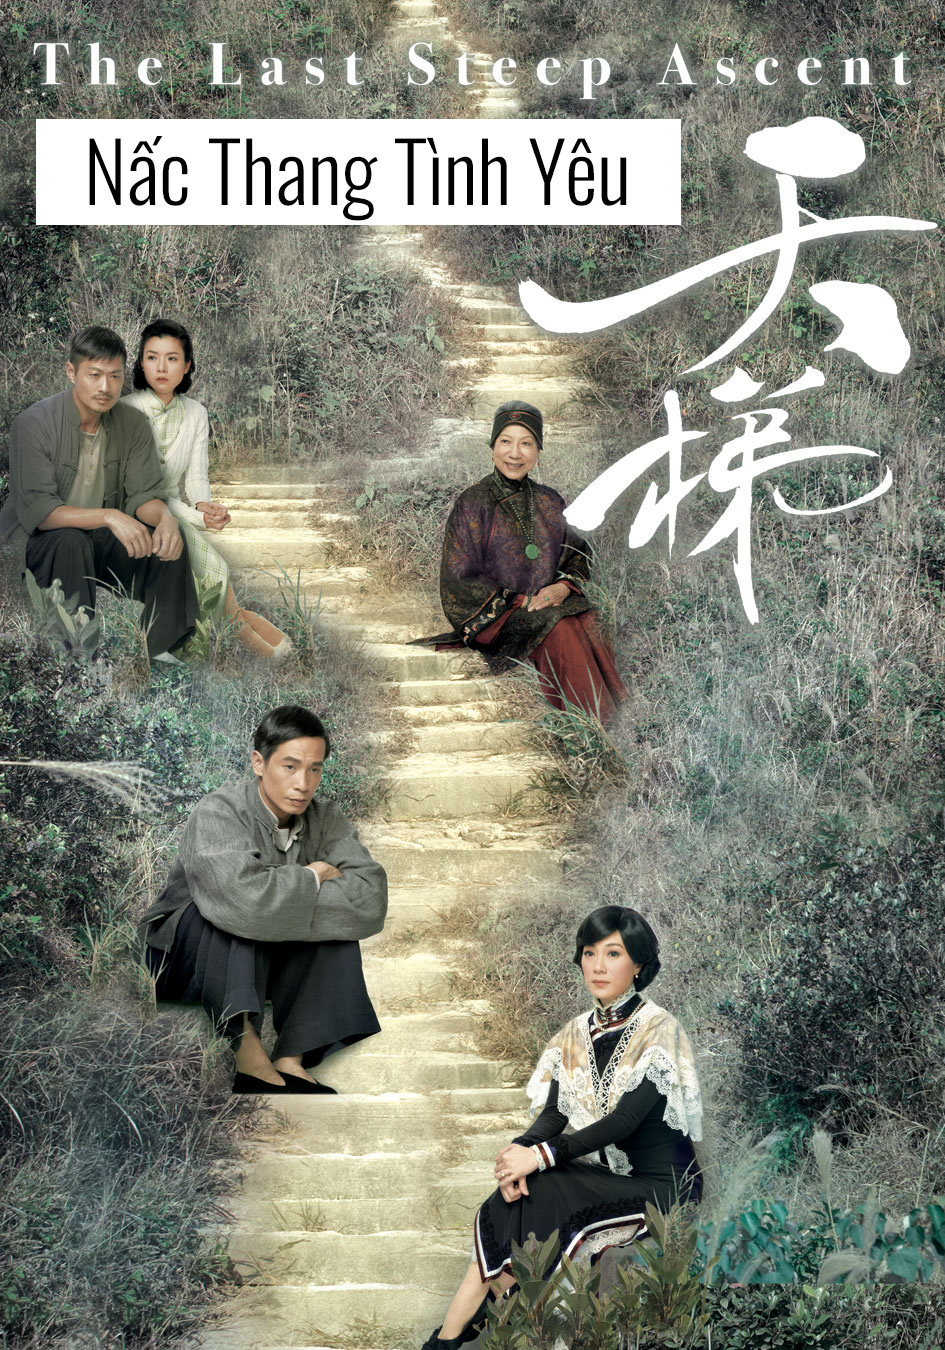 Phim TVB "Nấc Thang Tình Yêu" - Đỉnh cao của tình yêu và hài hước